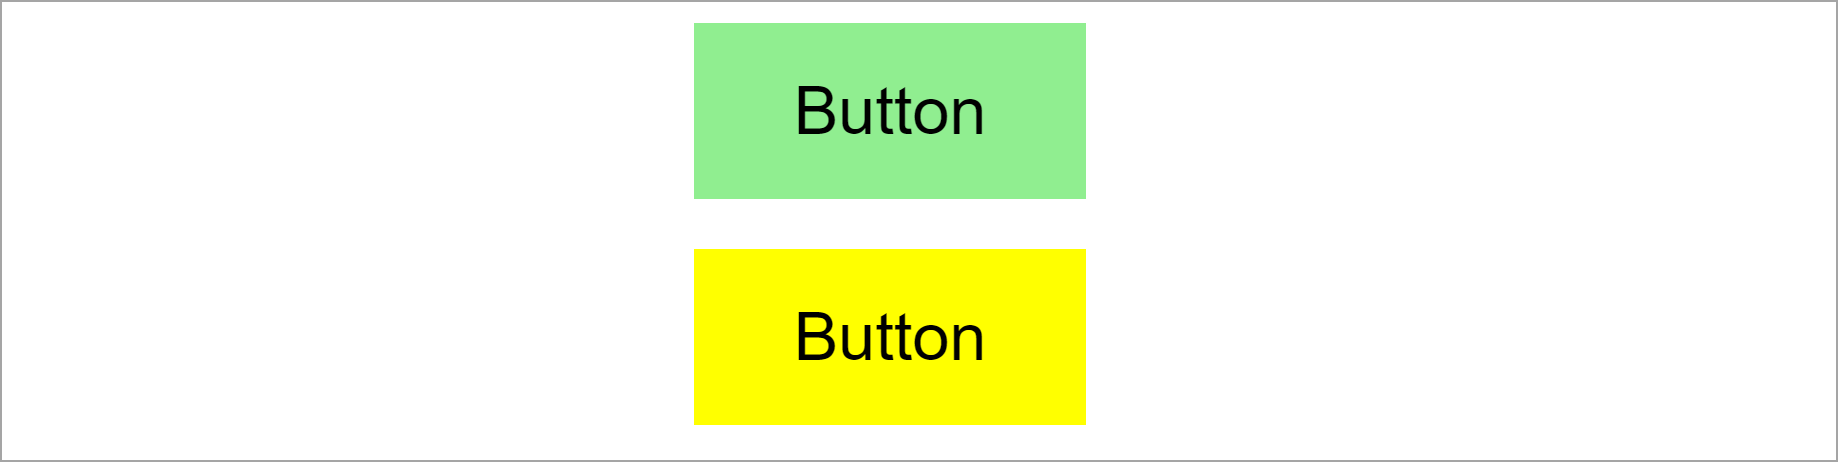 Dos botones con estilo dinámico JSS